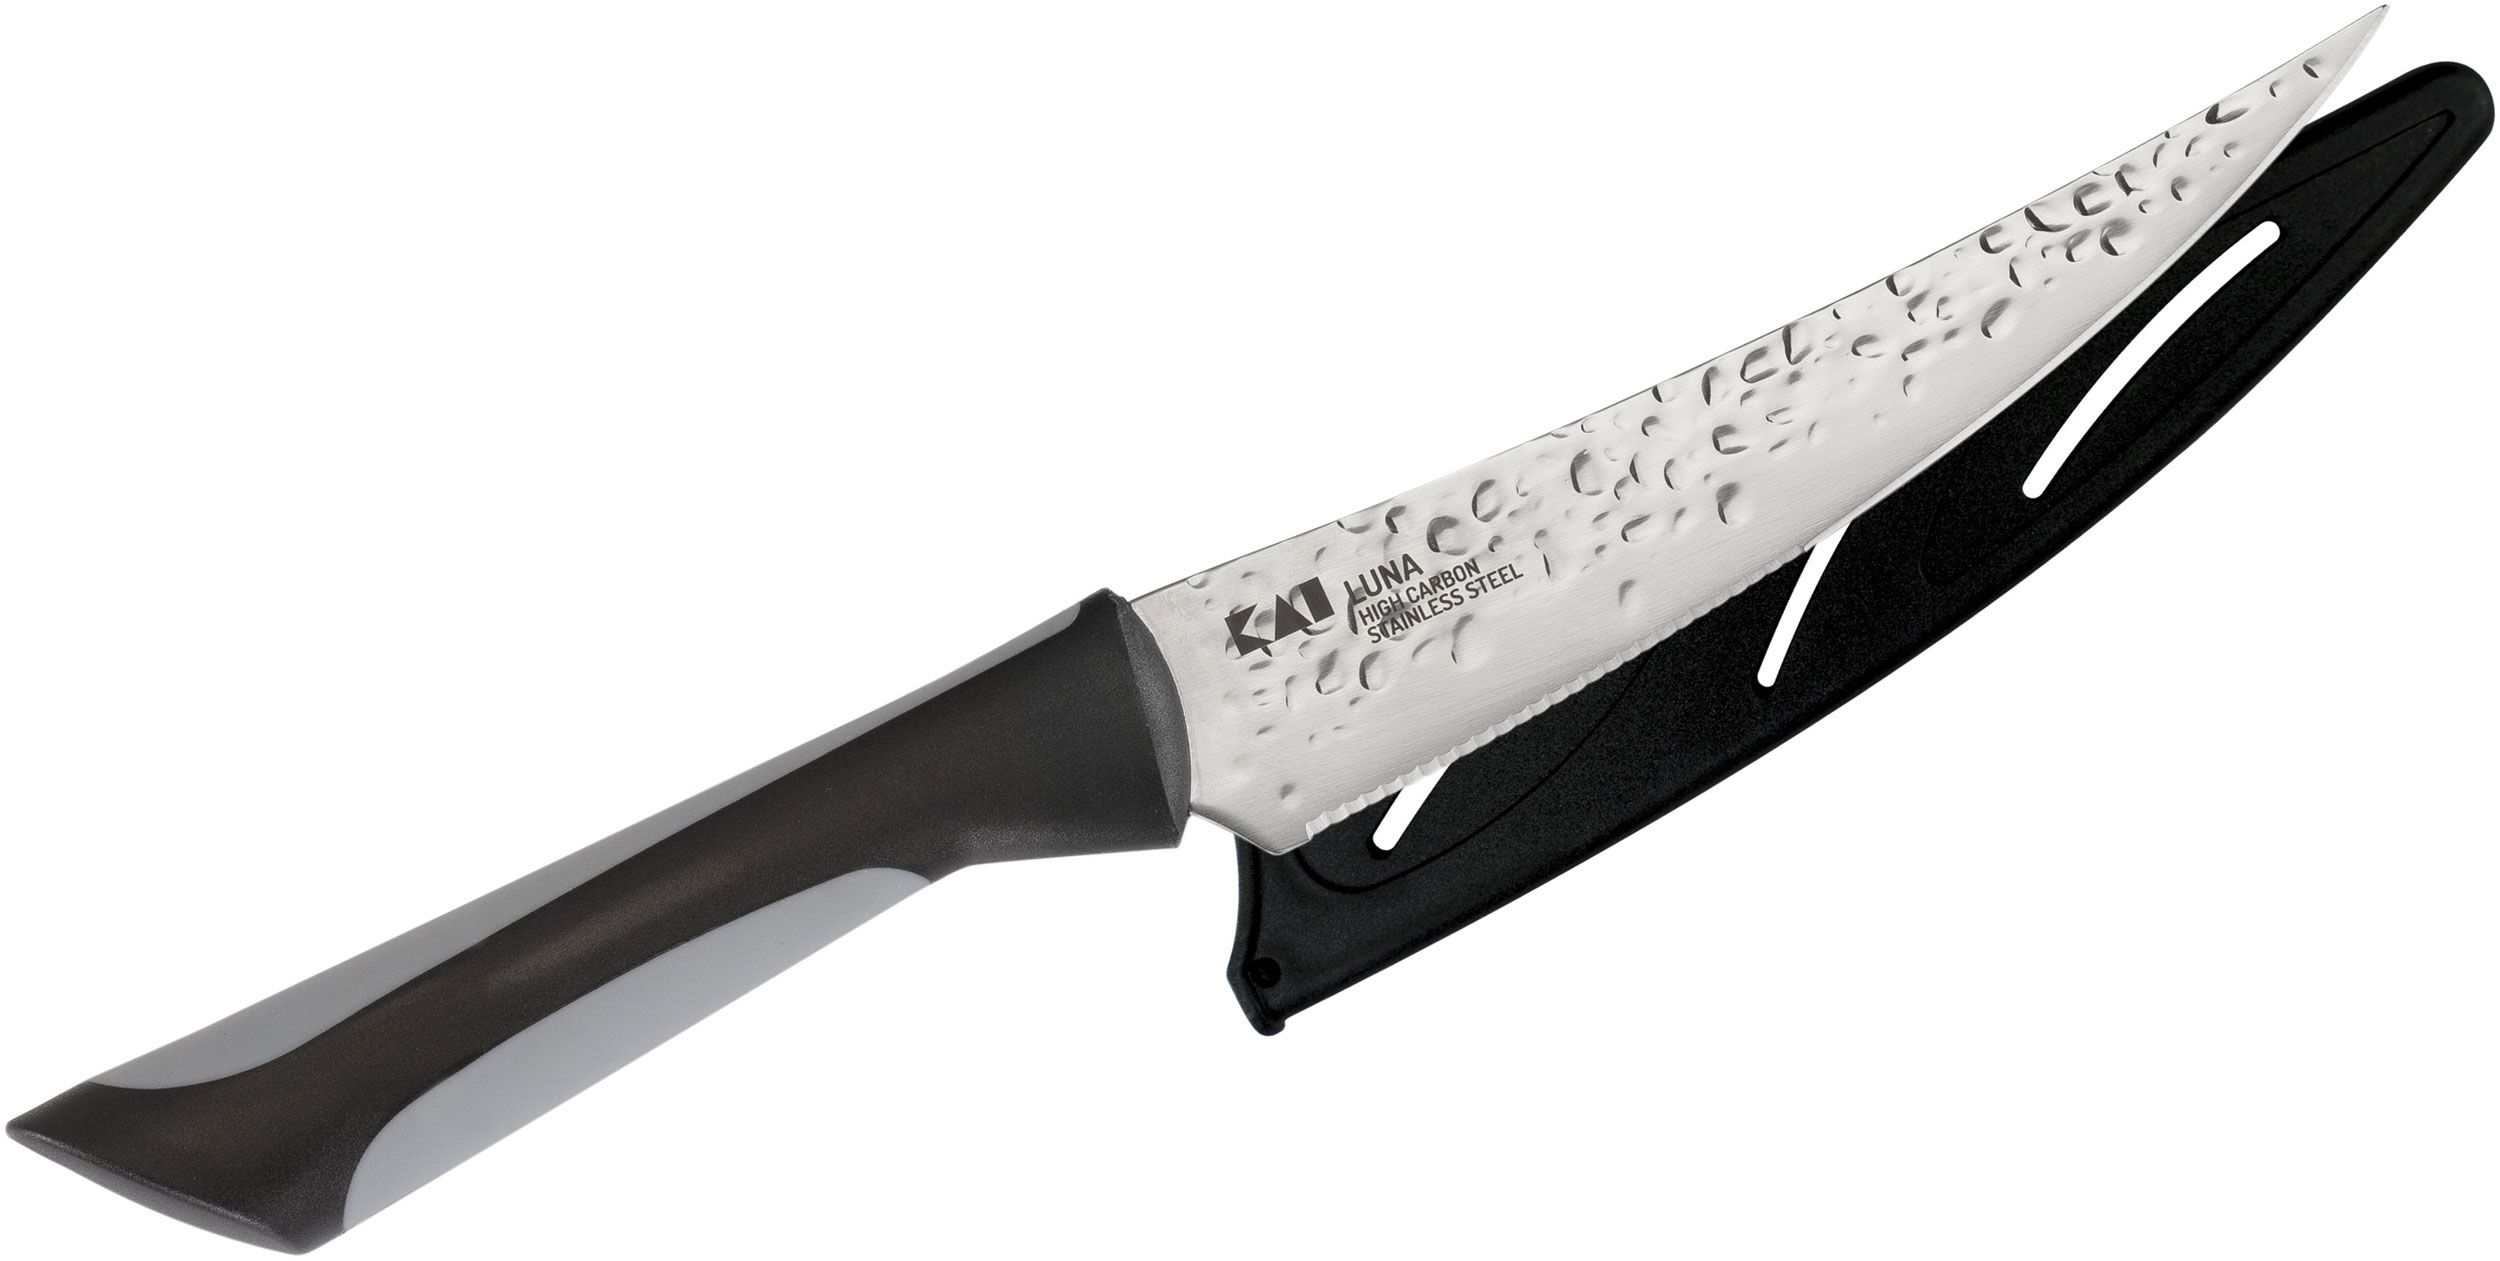 3 Piece Luna Essential Knife Set with Sheath Silver Chef Utility